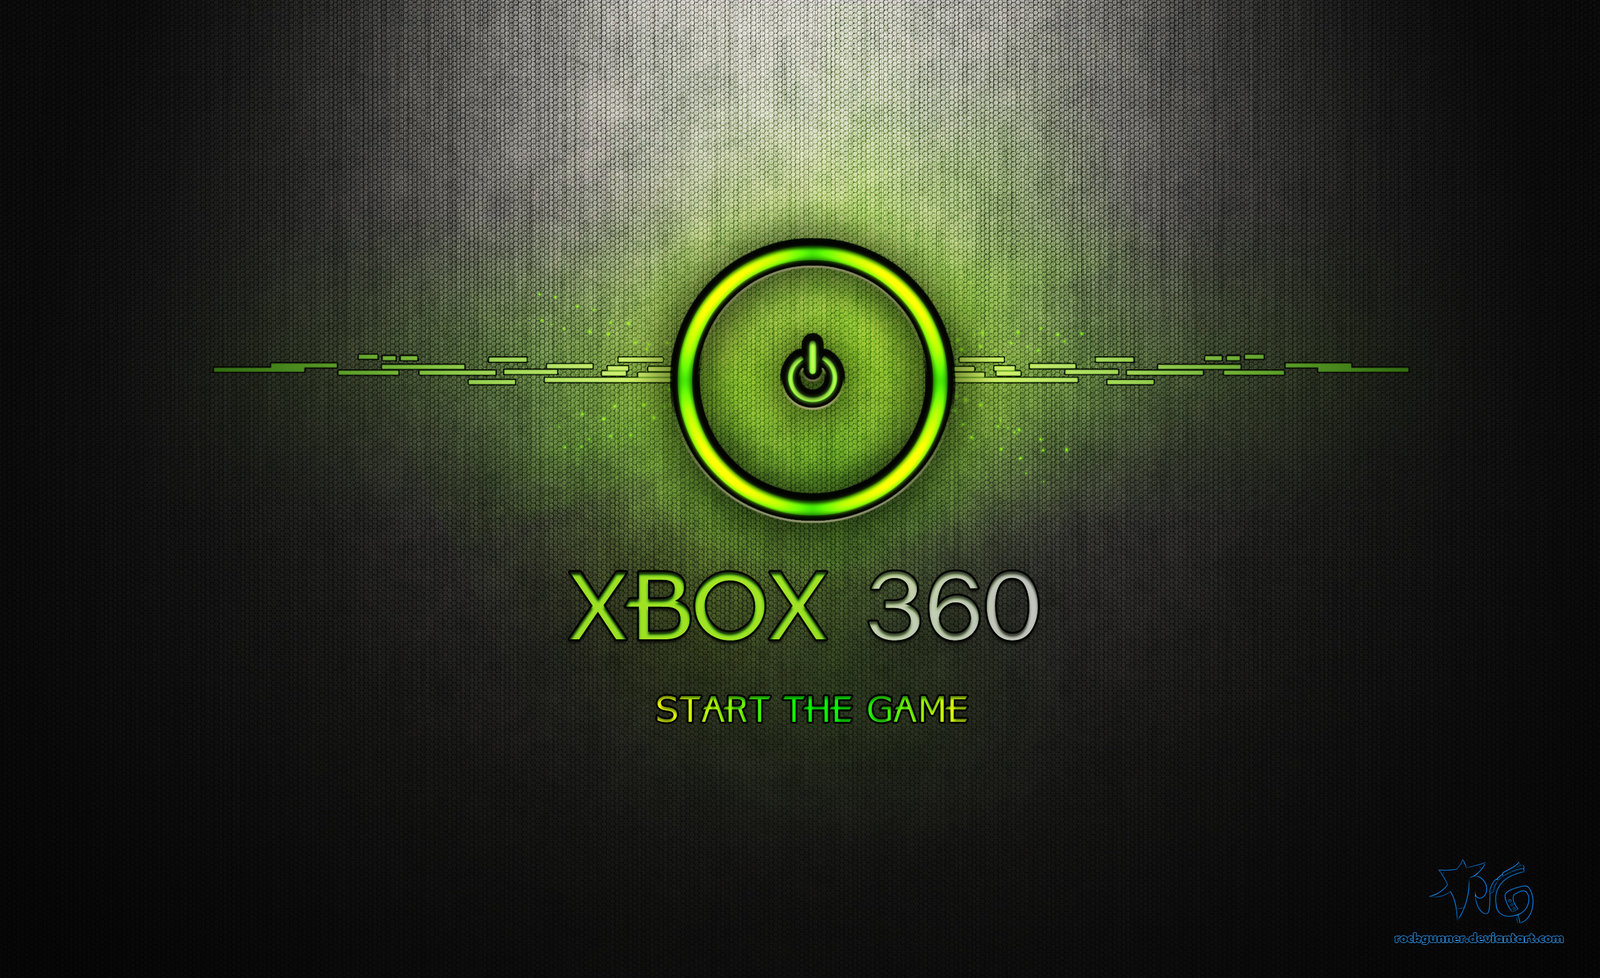 Tại đây, chúng tôi cung cấp cho bạn hơn 49 hình nền miễn phí cho Xbox